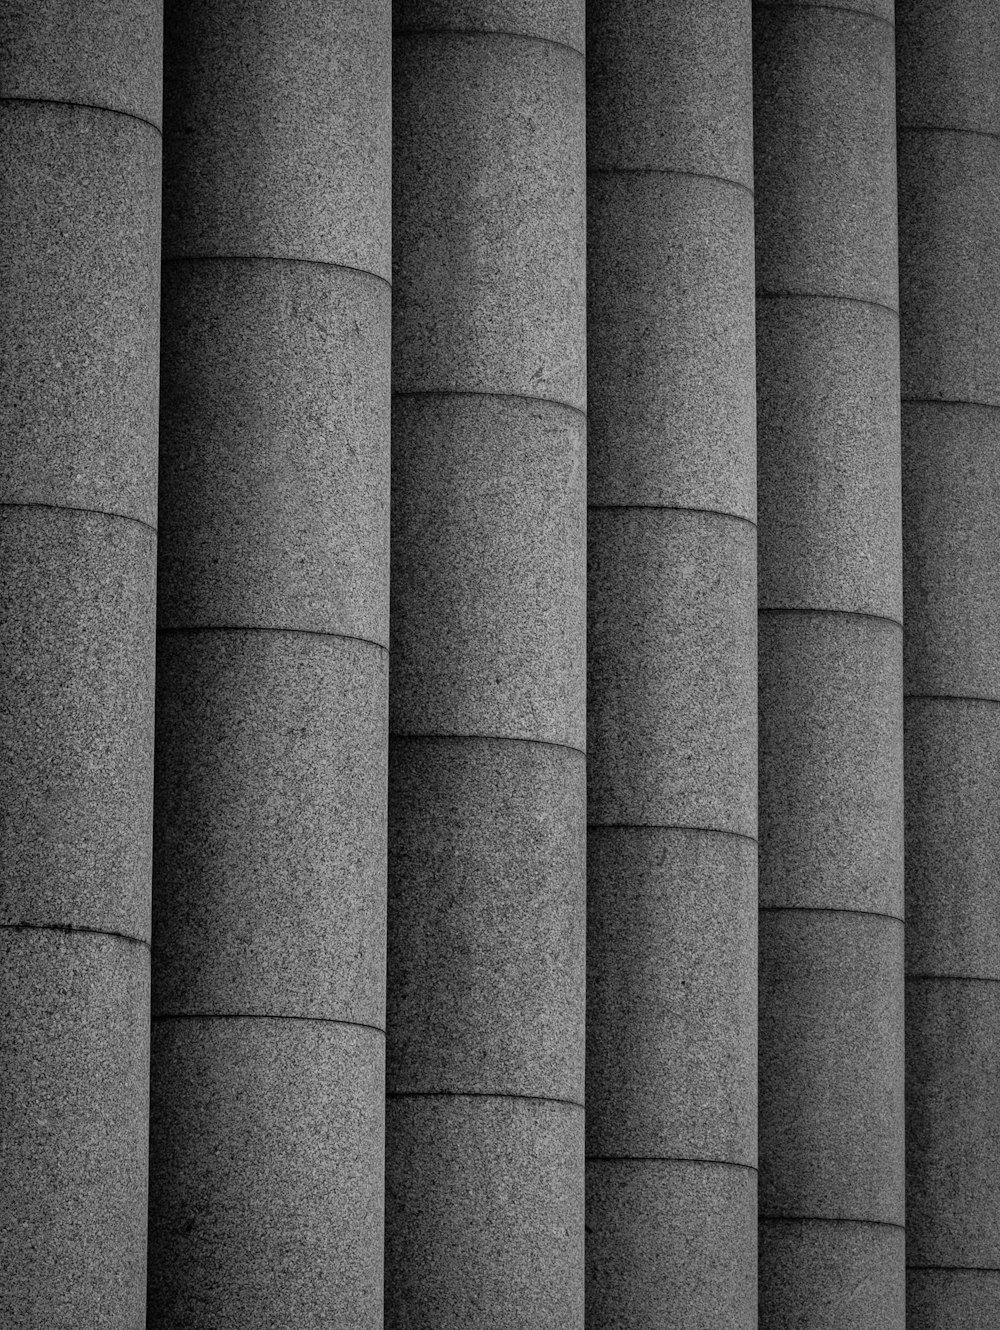 a row of grey pillars